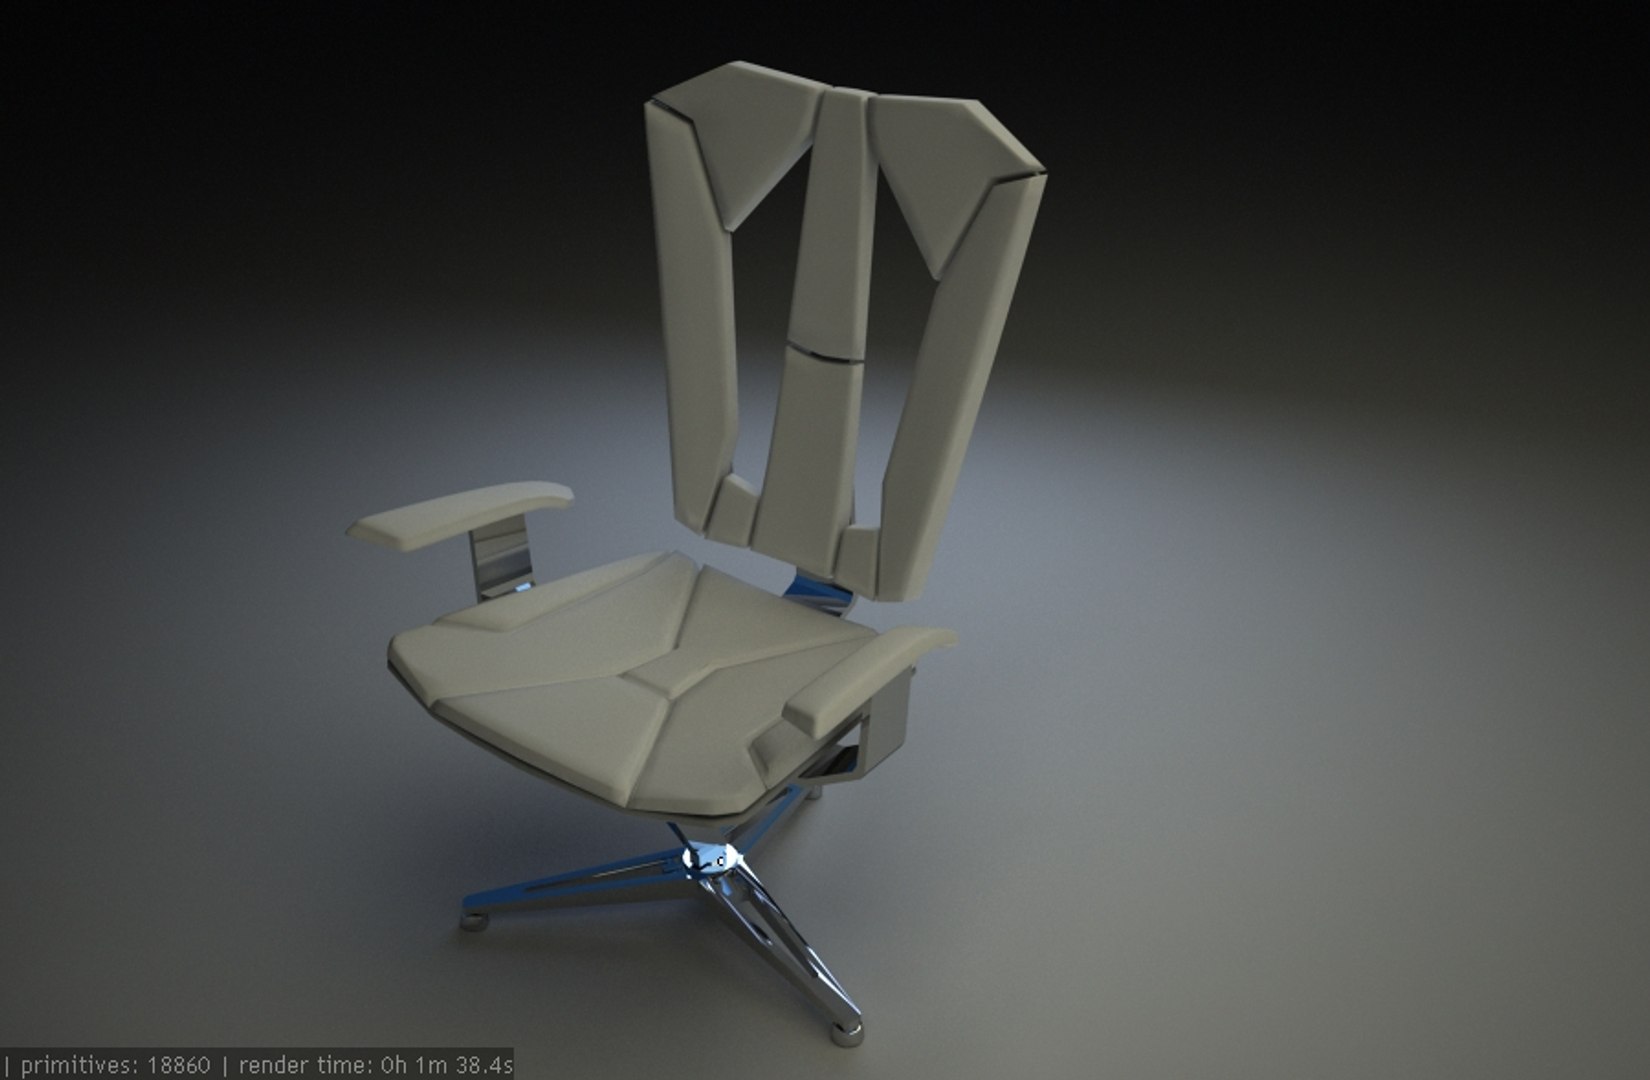 futuristic chair 3ds free https://p.turbosquid.com/ts-thumb/jV/C5QyN9/iHFlontS/render_2/jpg/1247250935/1920x1080/fit_q87/1a64424c77b99f134766d678d9d2cc373d2f553c/render_2.jpg